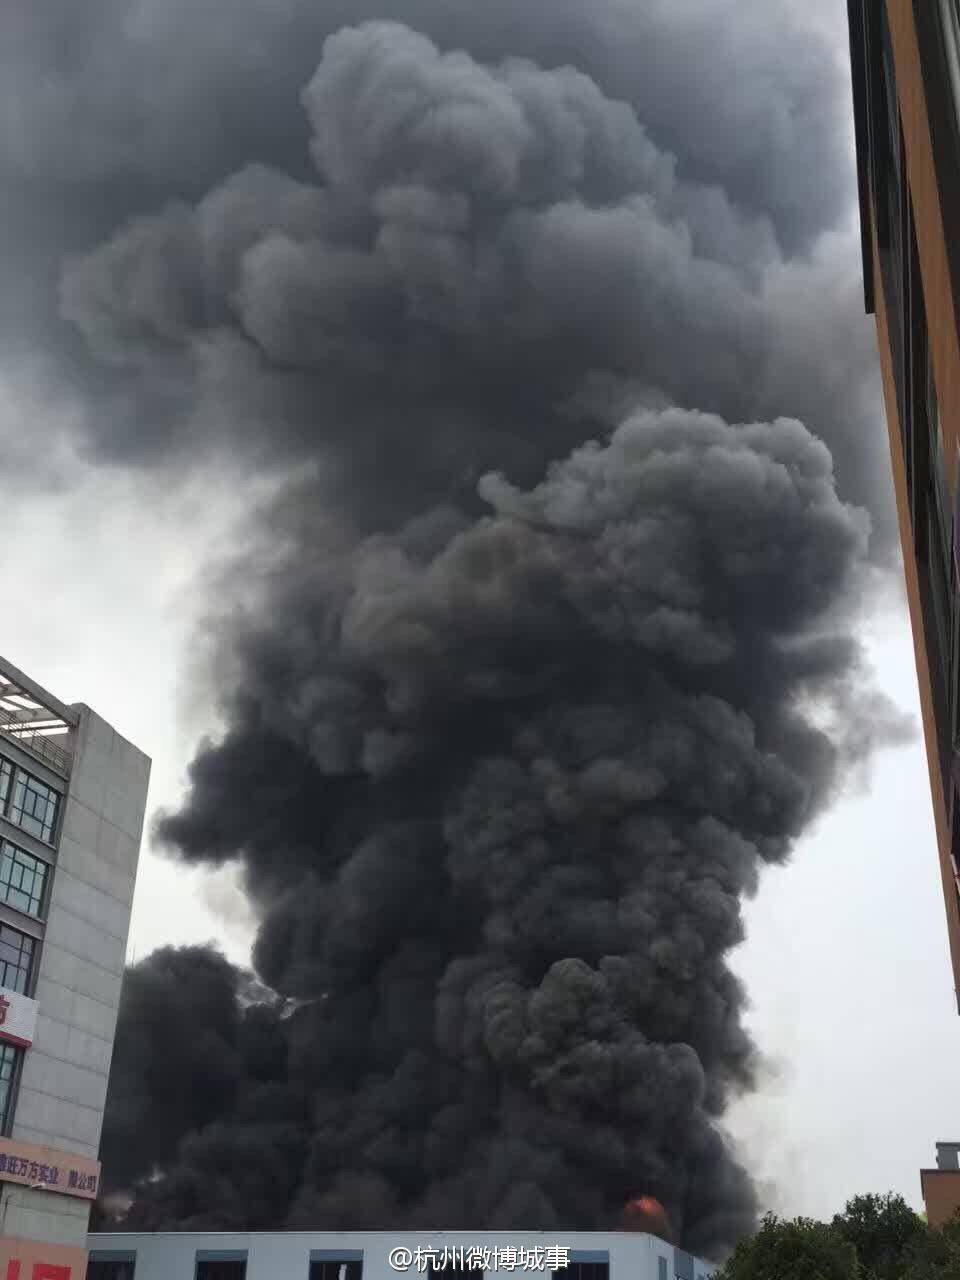 城北通益路金恒德市场着火发生火灾